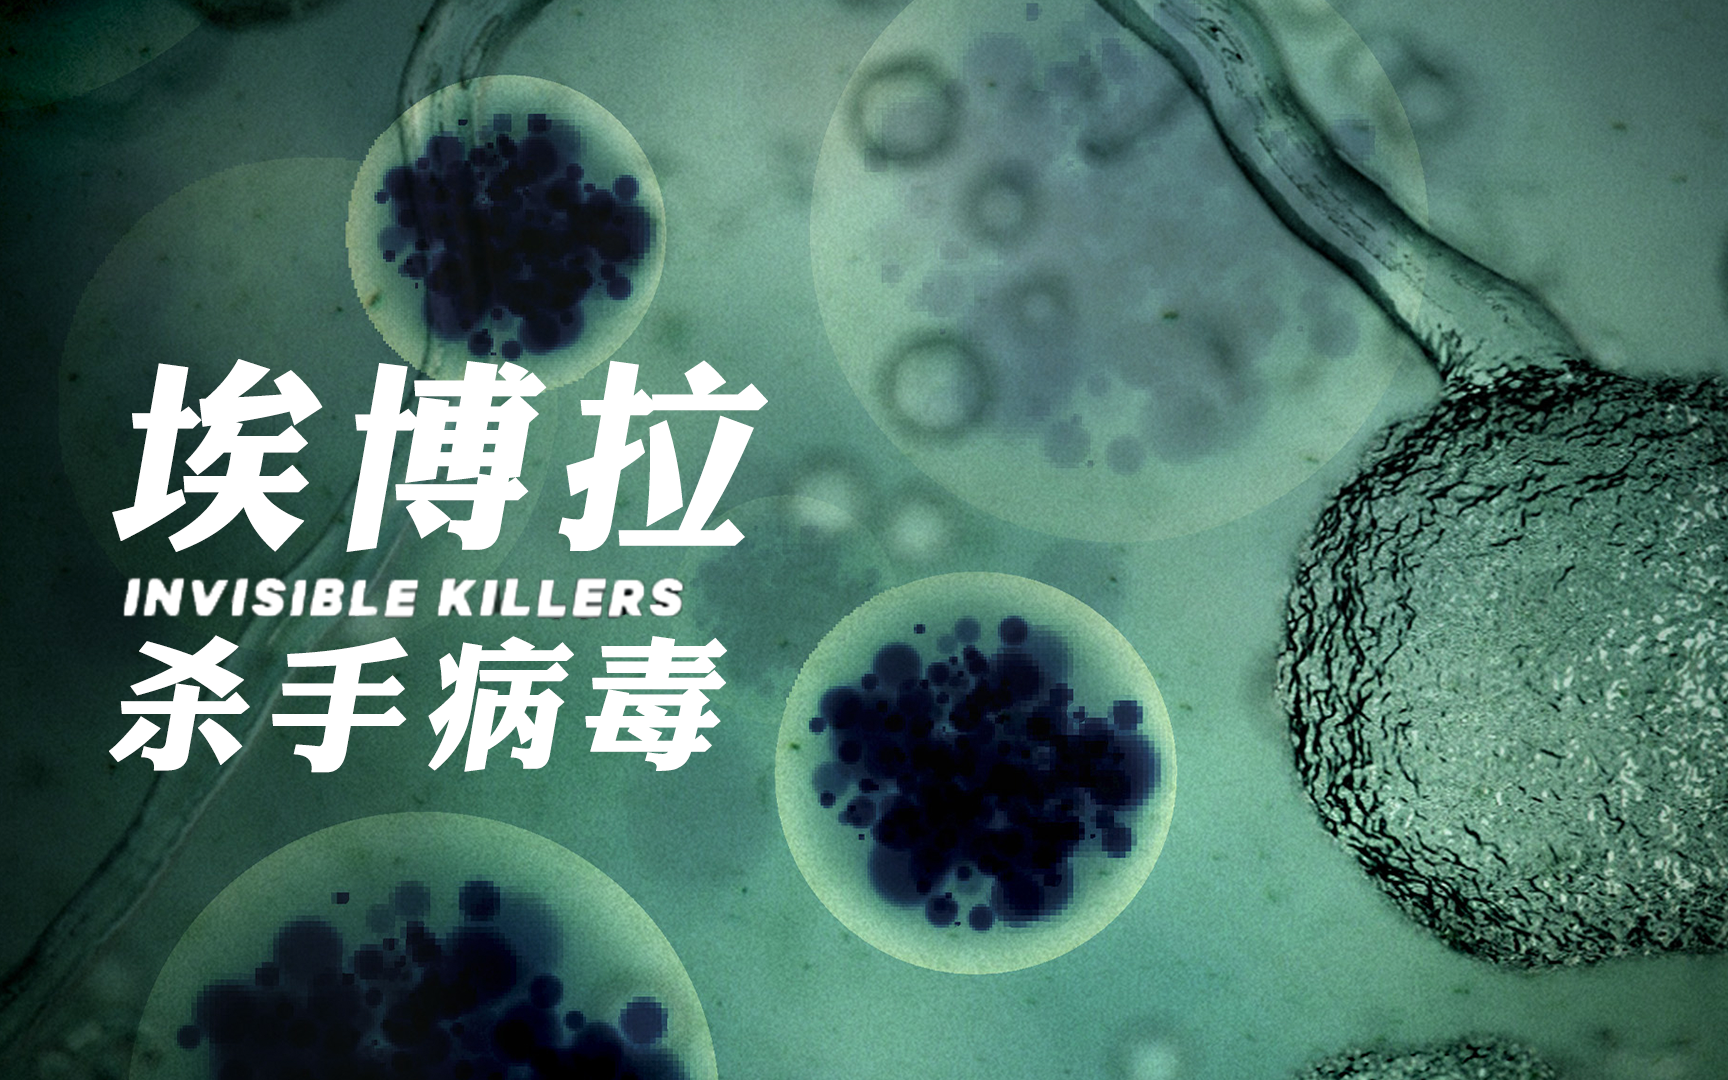 【纪录片】杀手病毒 03 埃博拉